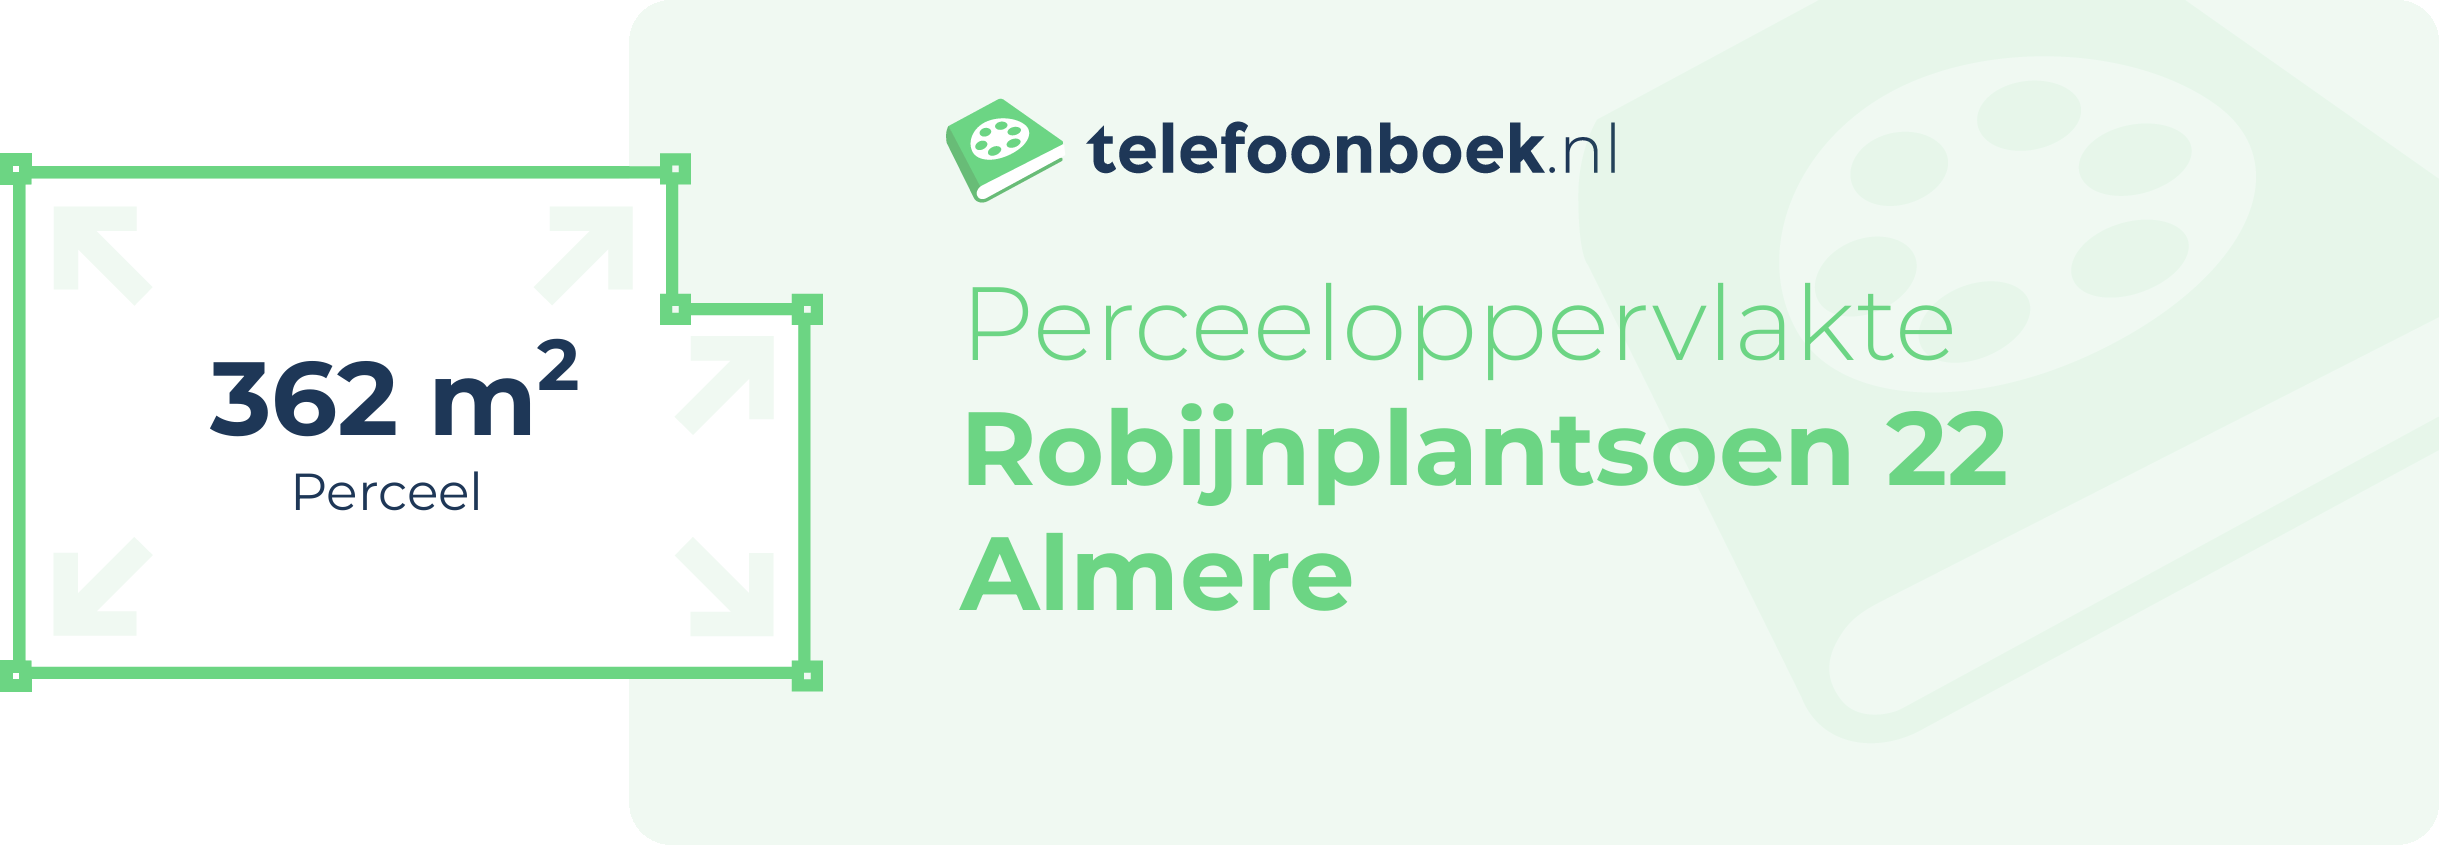 Perceeloppervlakte Robijnplantsoen 22 Almere